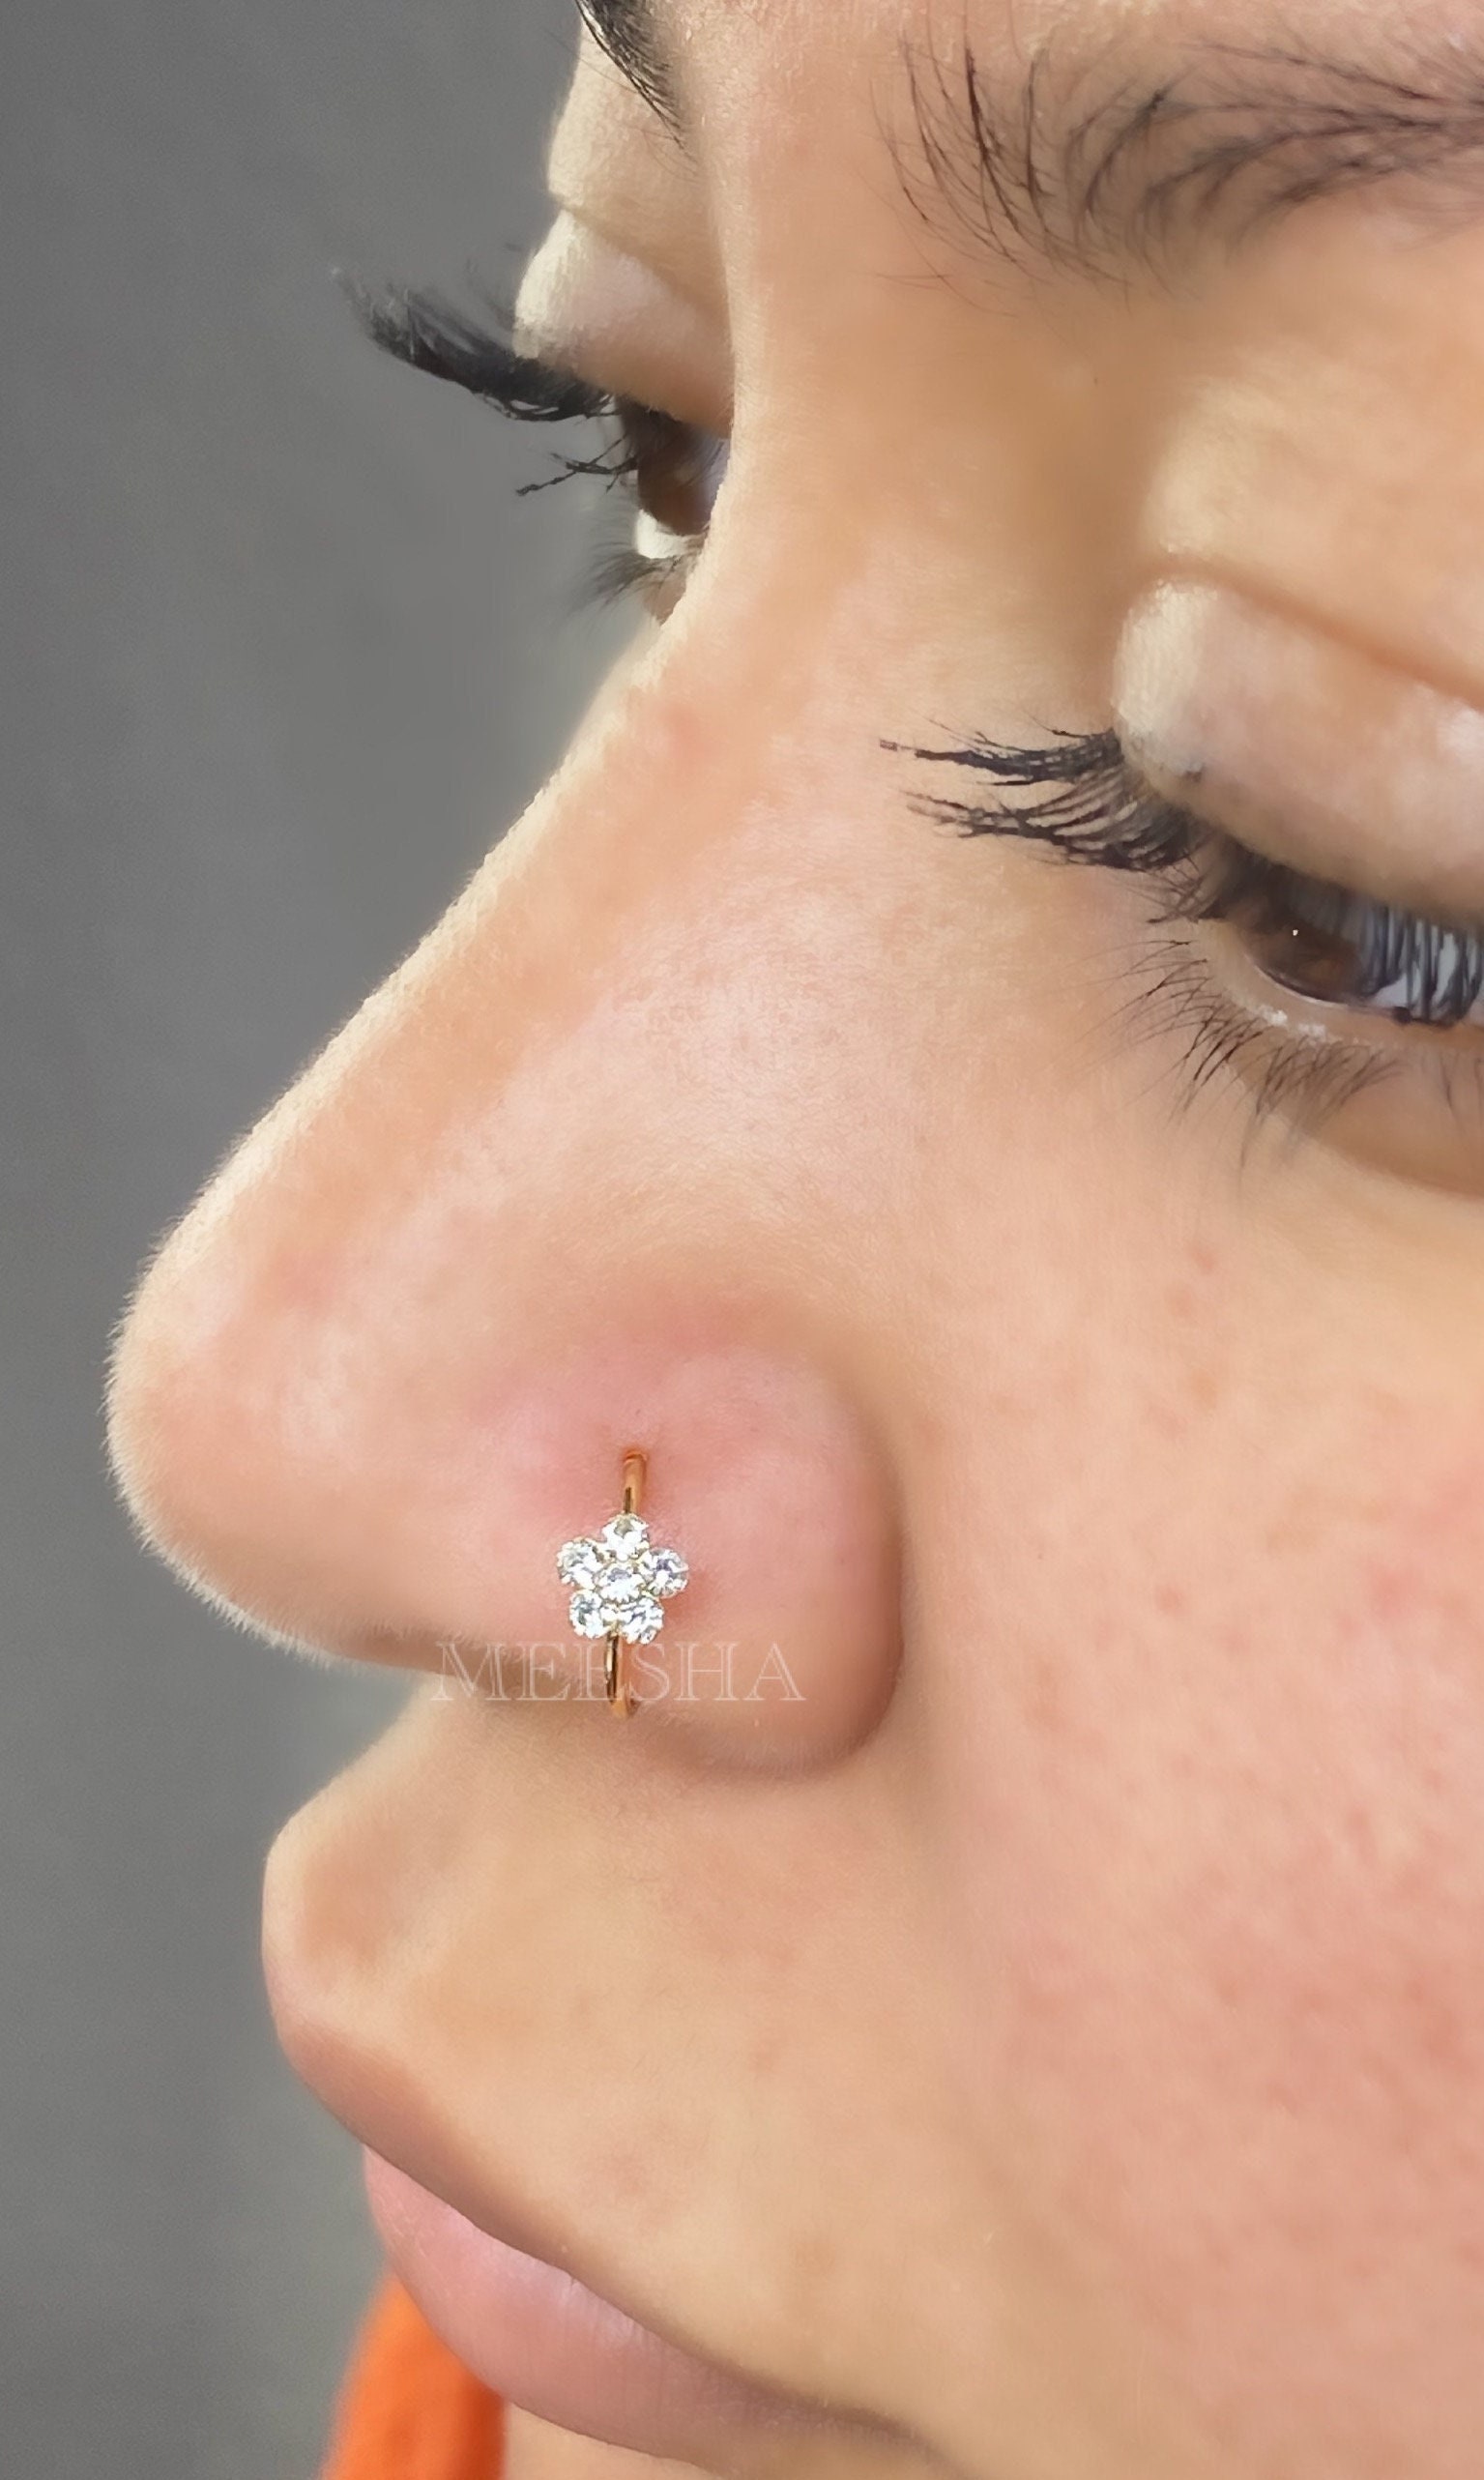 Piccolo Sottile anelli per naso un Cristallo Diamante A Cerchio Perno Luccicante Cristallo Piercing al naso 